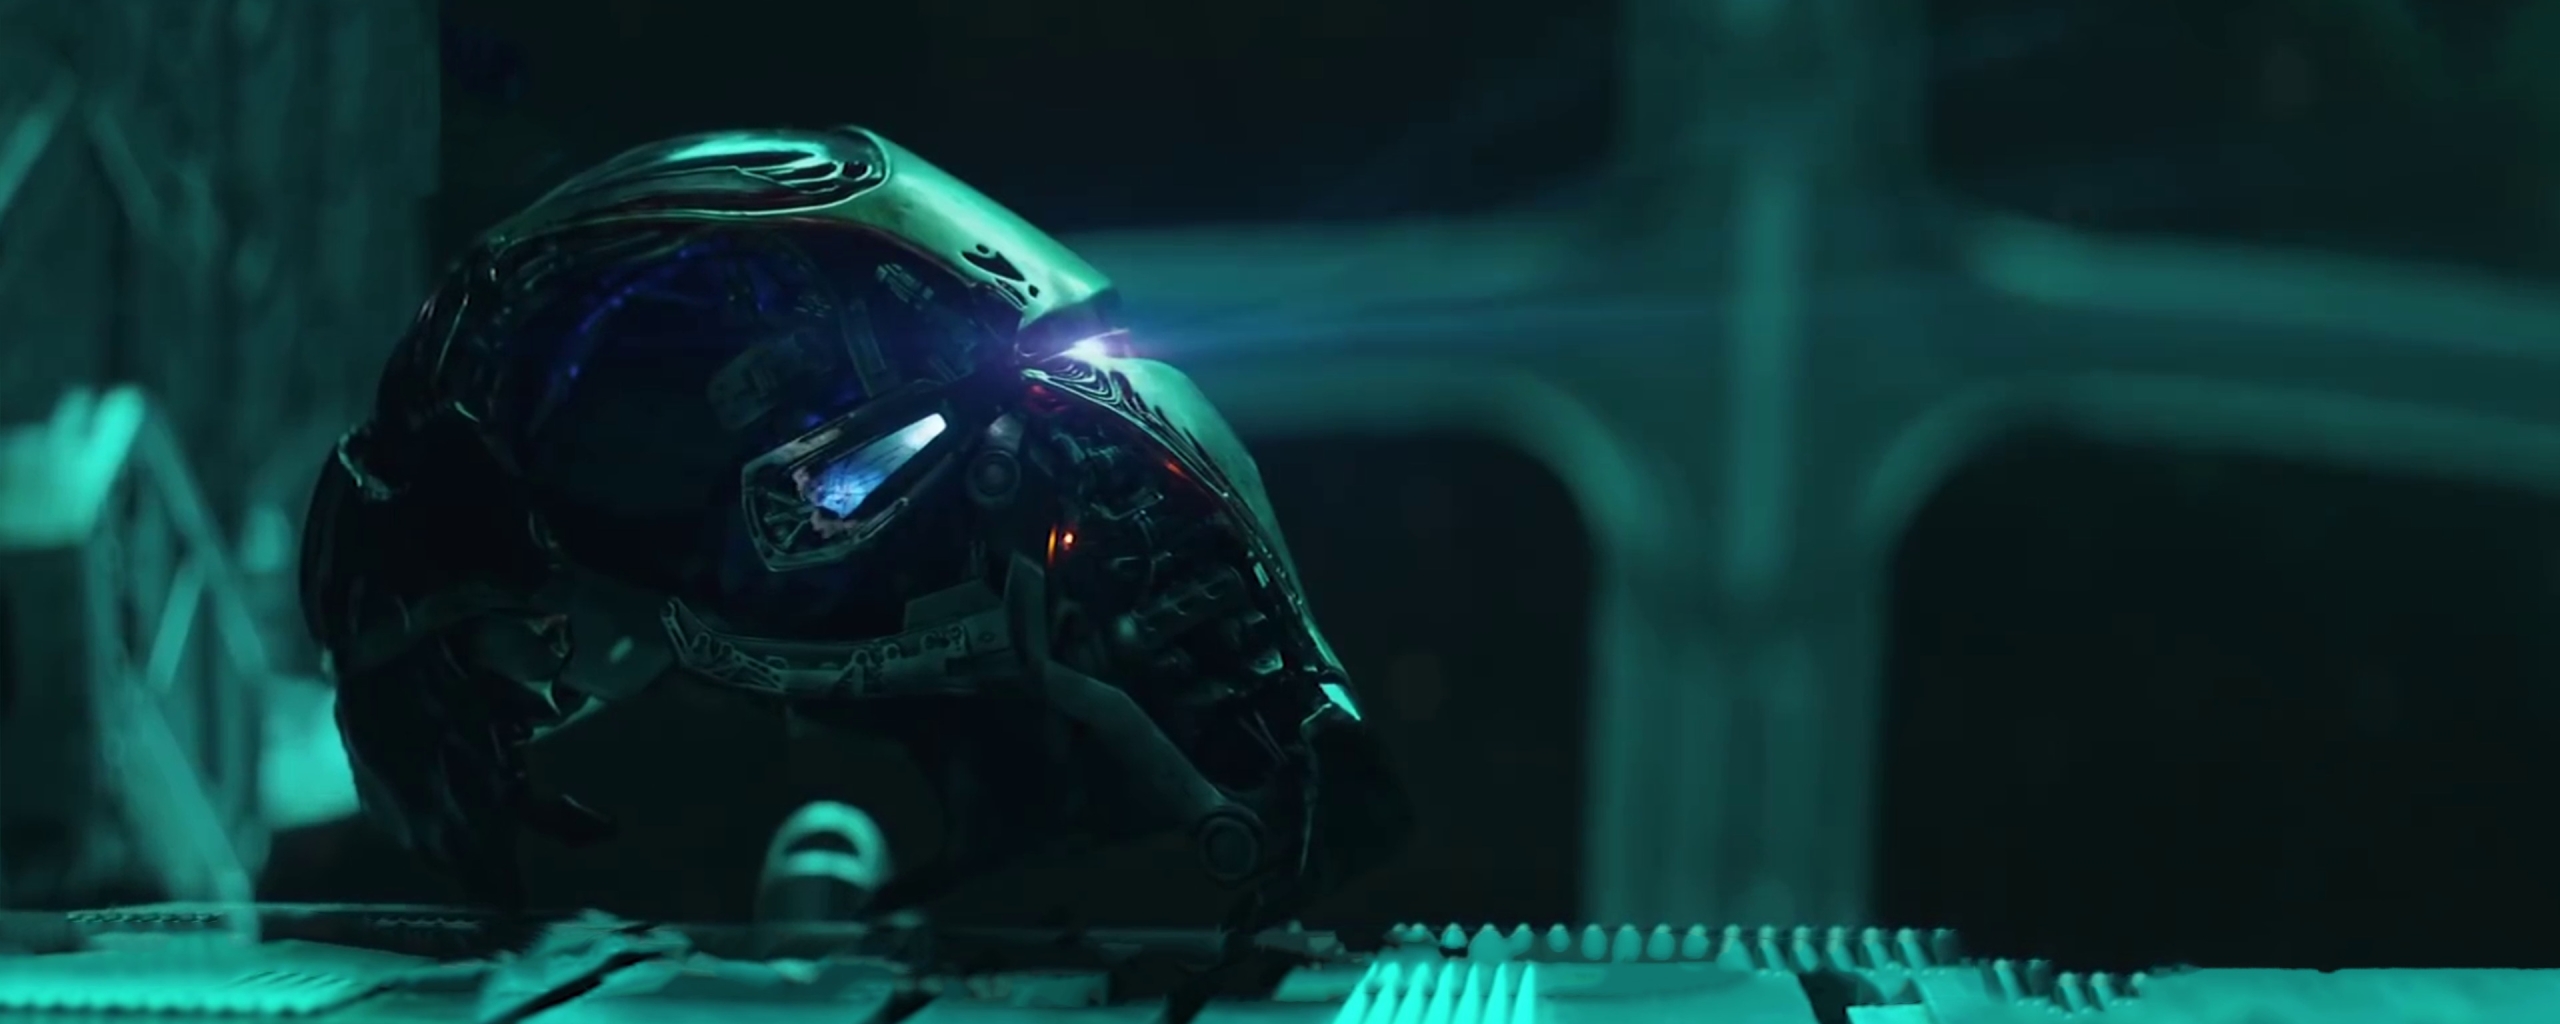 2560x1024 Iron Man Helmet From Avengers Endgame 2560x1024 ...